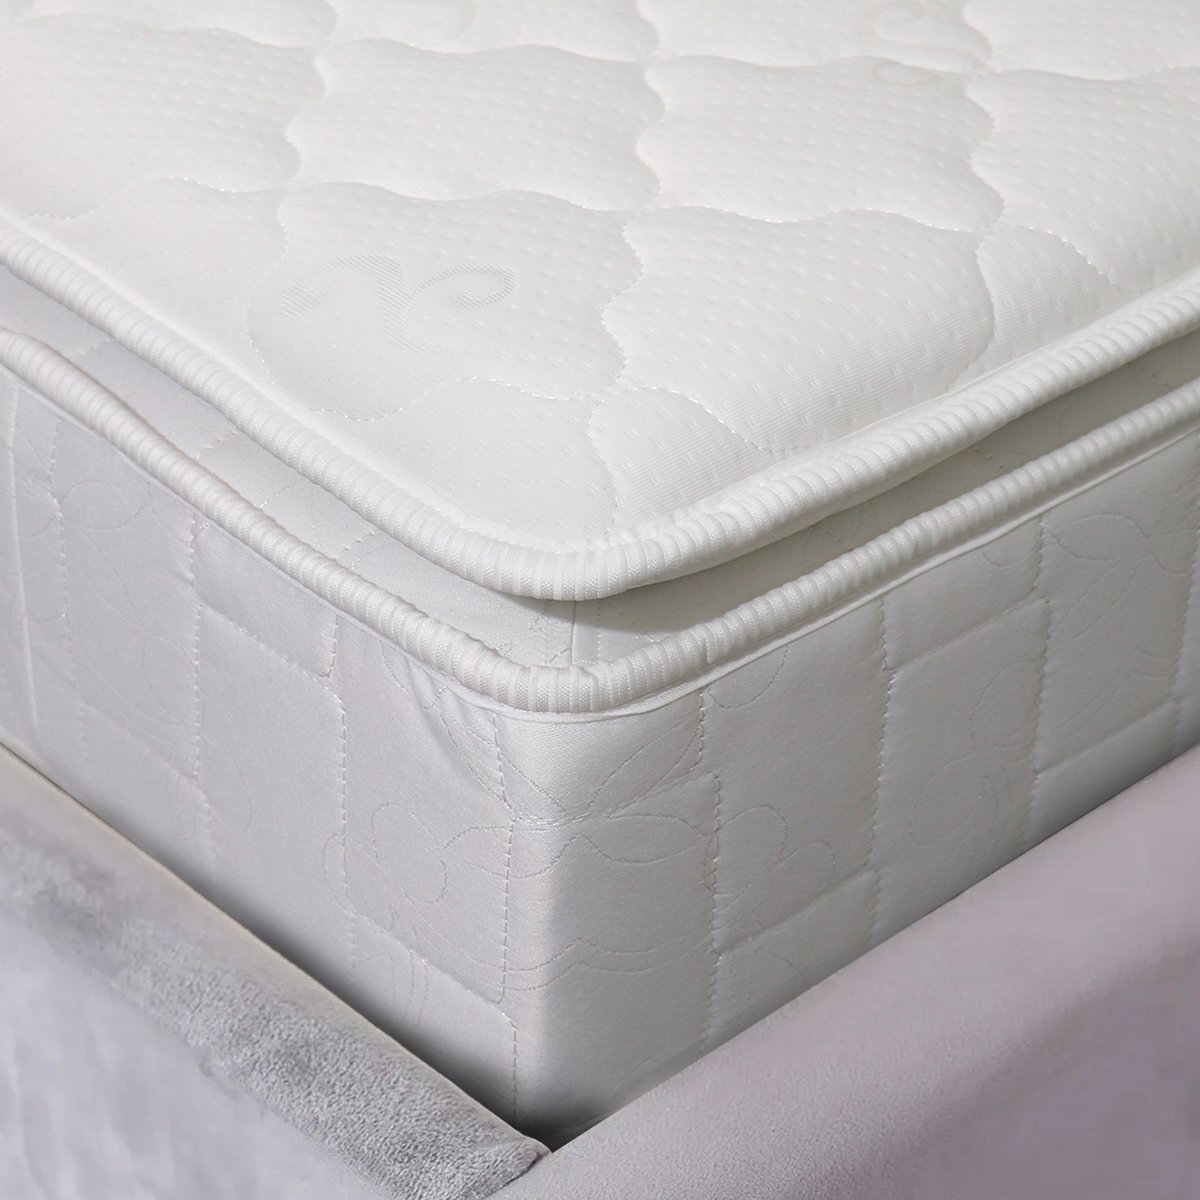 Cotton Home Medical Pillow Top Mattress 120x200+20cm